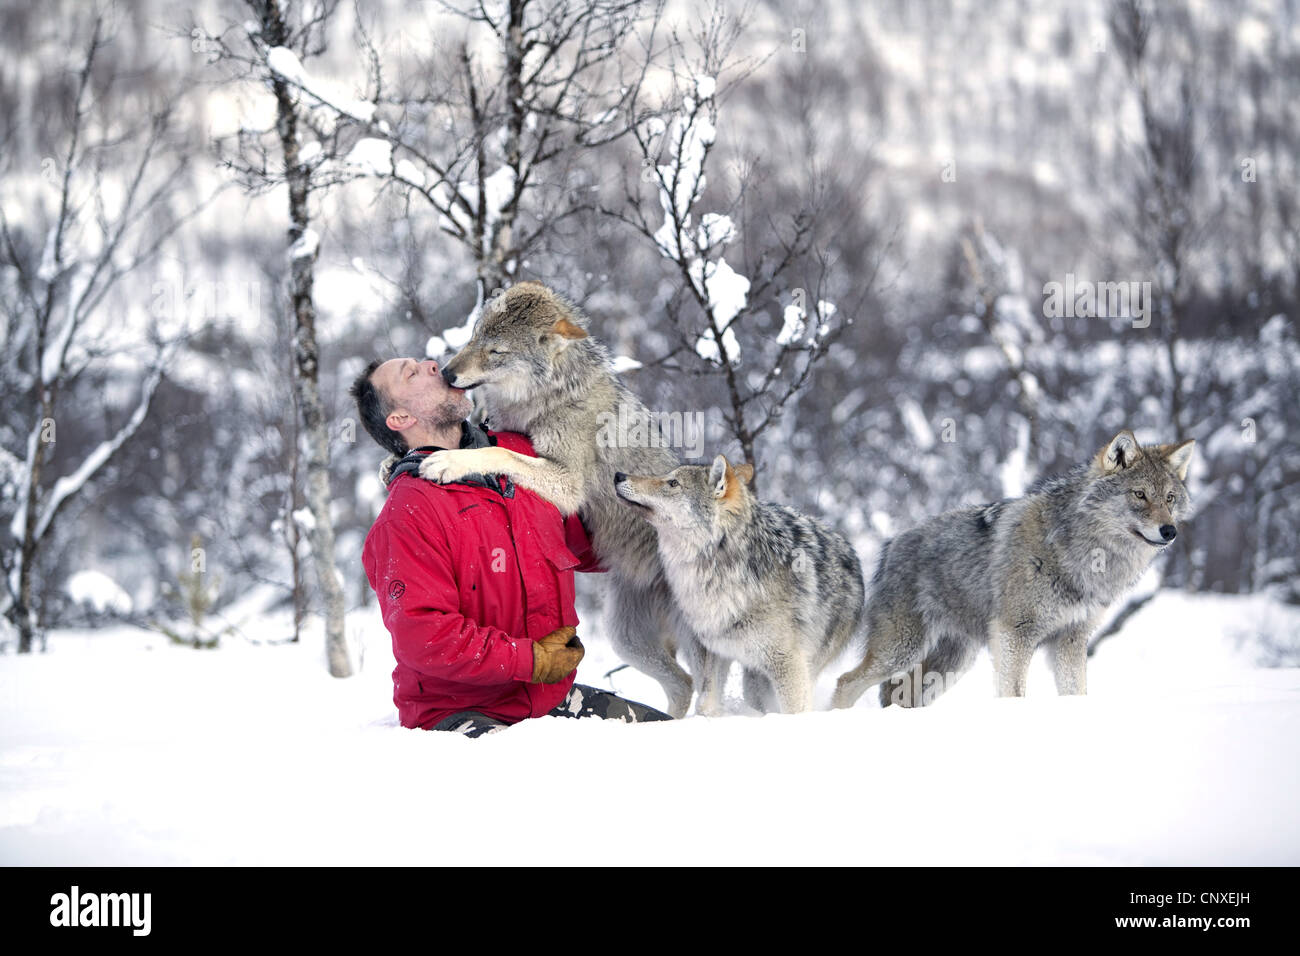 Unione lupo (Canis lupus lupus), guardiano al Zoo polare, rollicking circa nella neve con animali socializzato, Norvegia, Landkreis Bardu , Salangstal Foto Stock